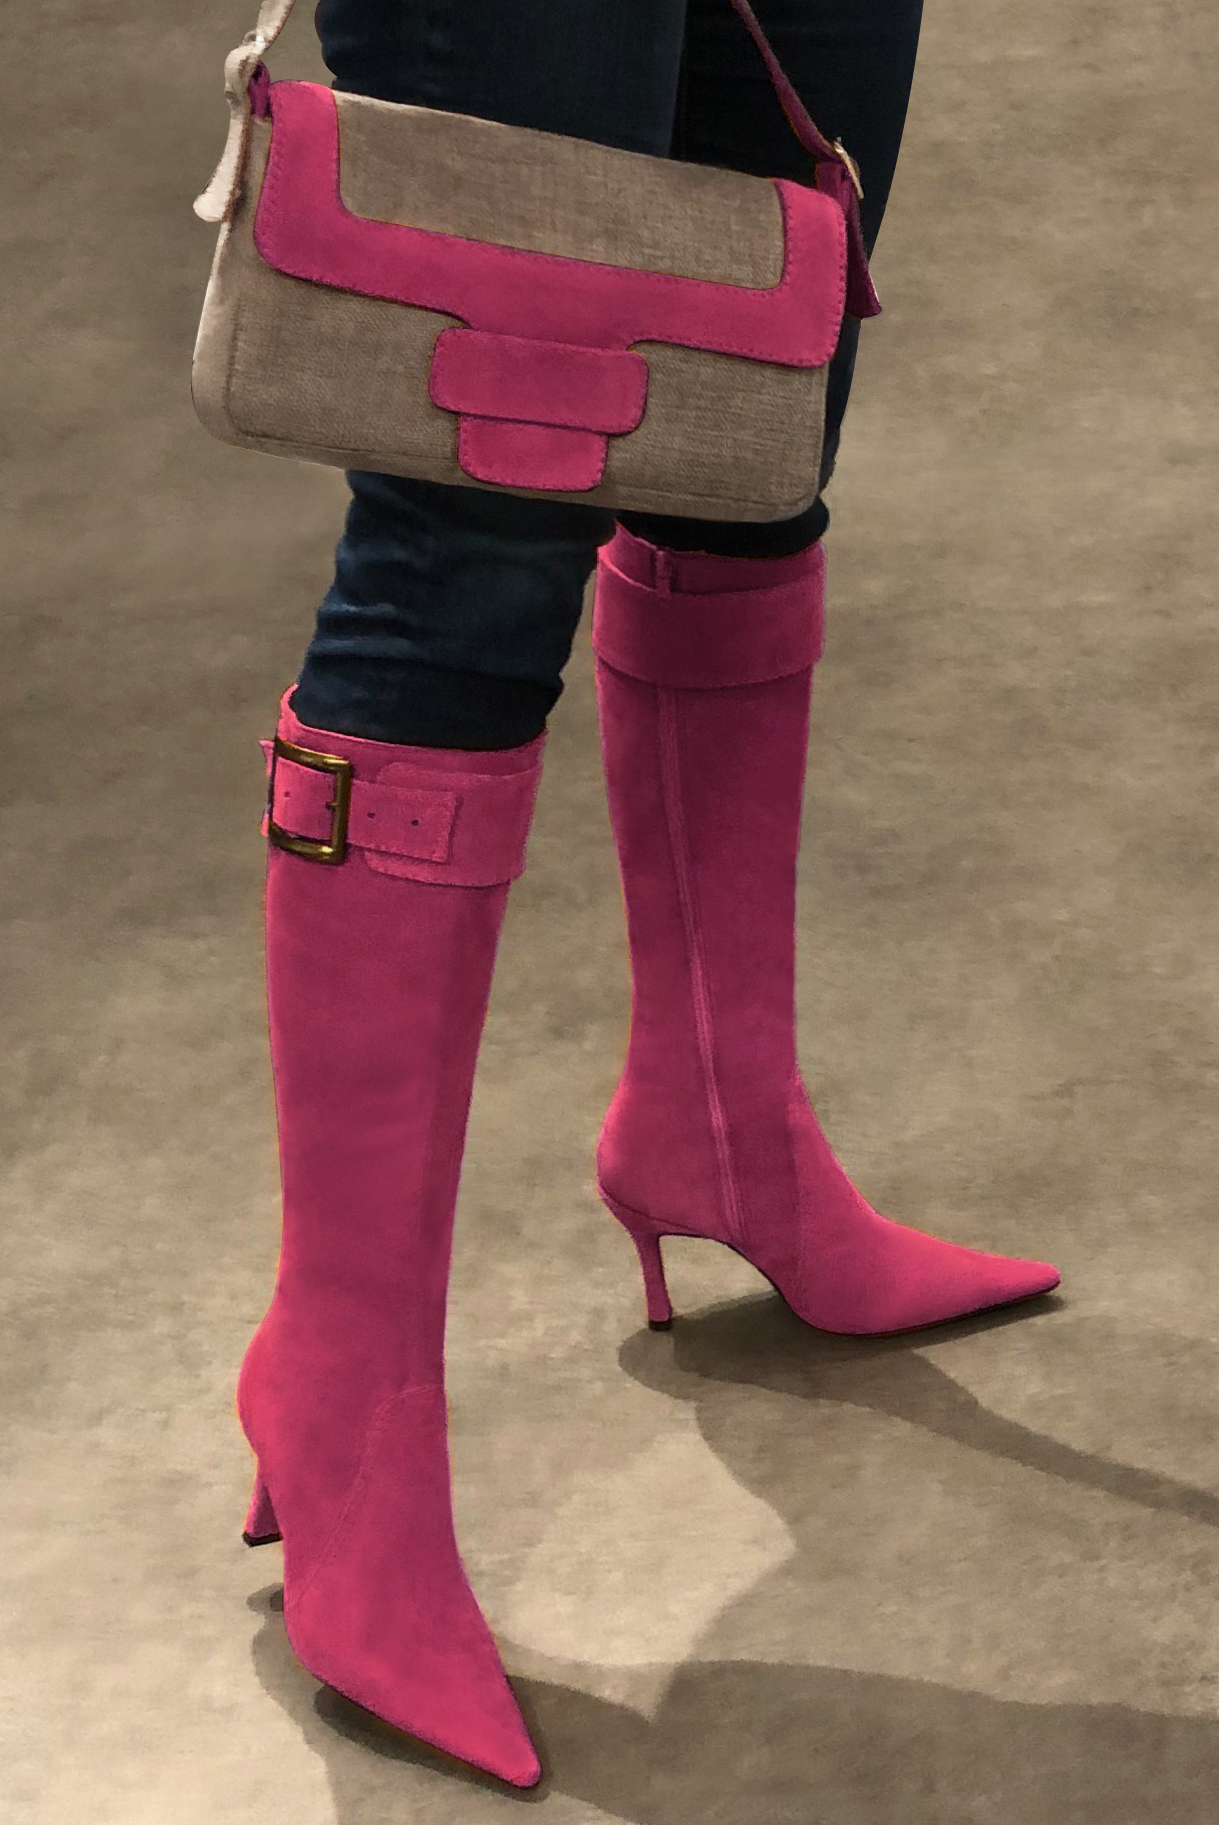 Tan beige and fuschia pink women's dress handbag, matching pumps and belts. Worn view - Florence KOOIJMAN